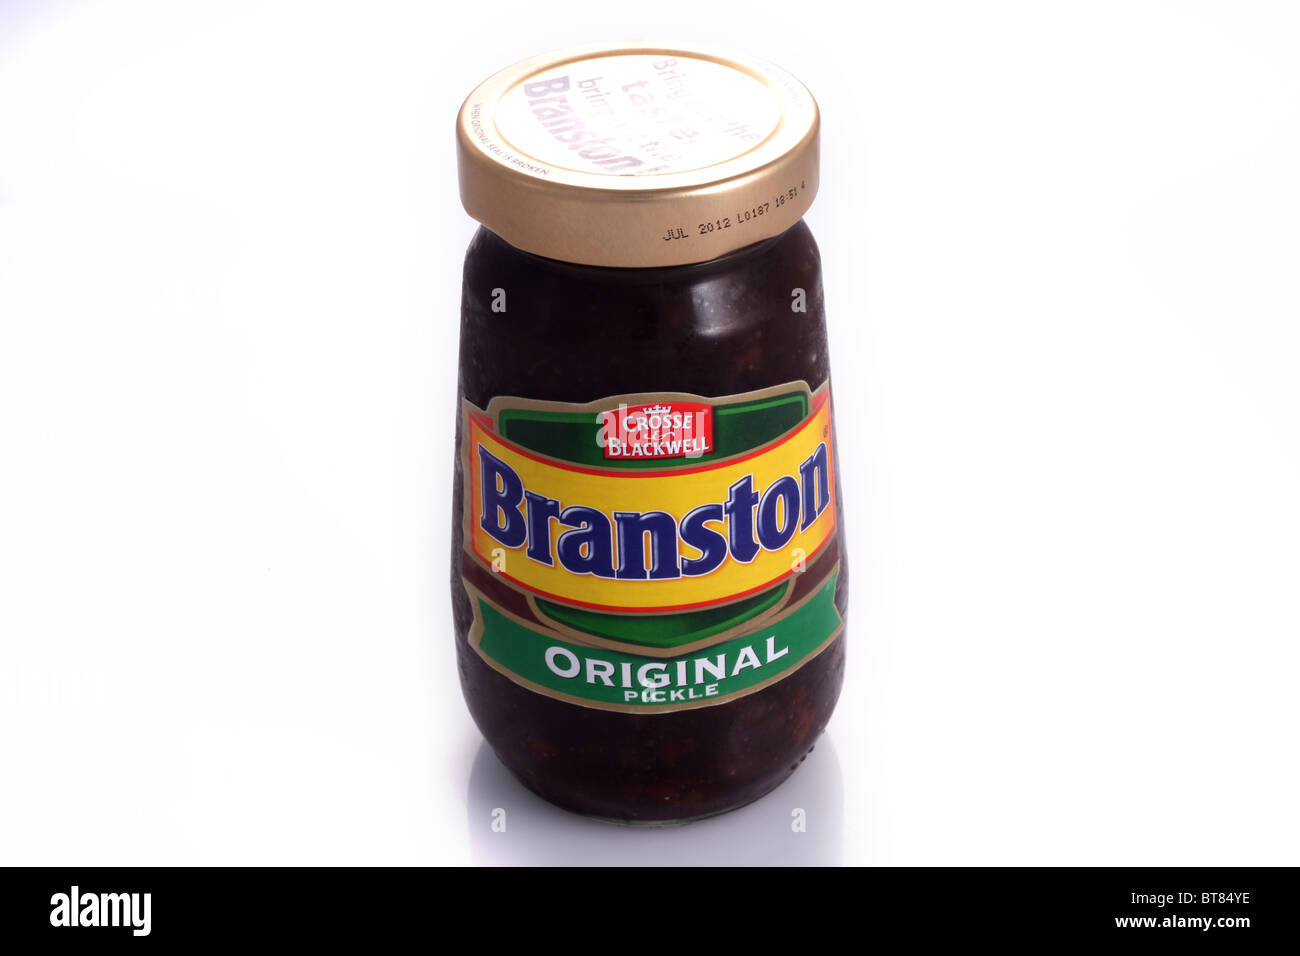 Glas von Branston Original Pickle, Crosse und Blackwell. Stockfoto